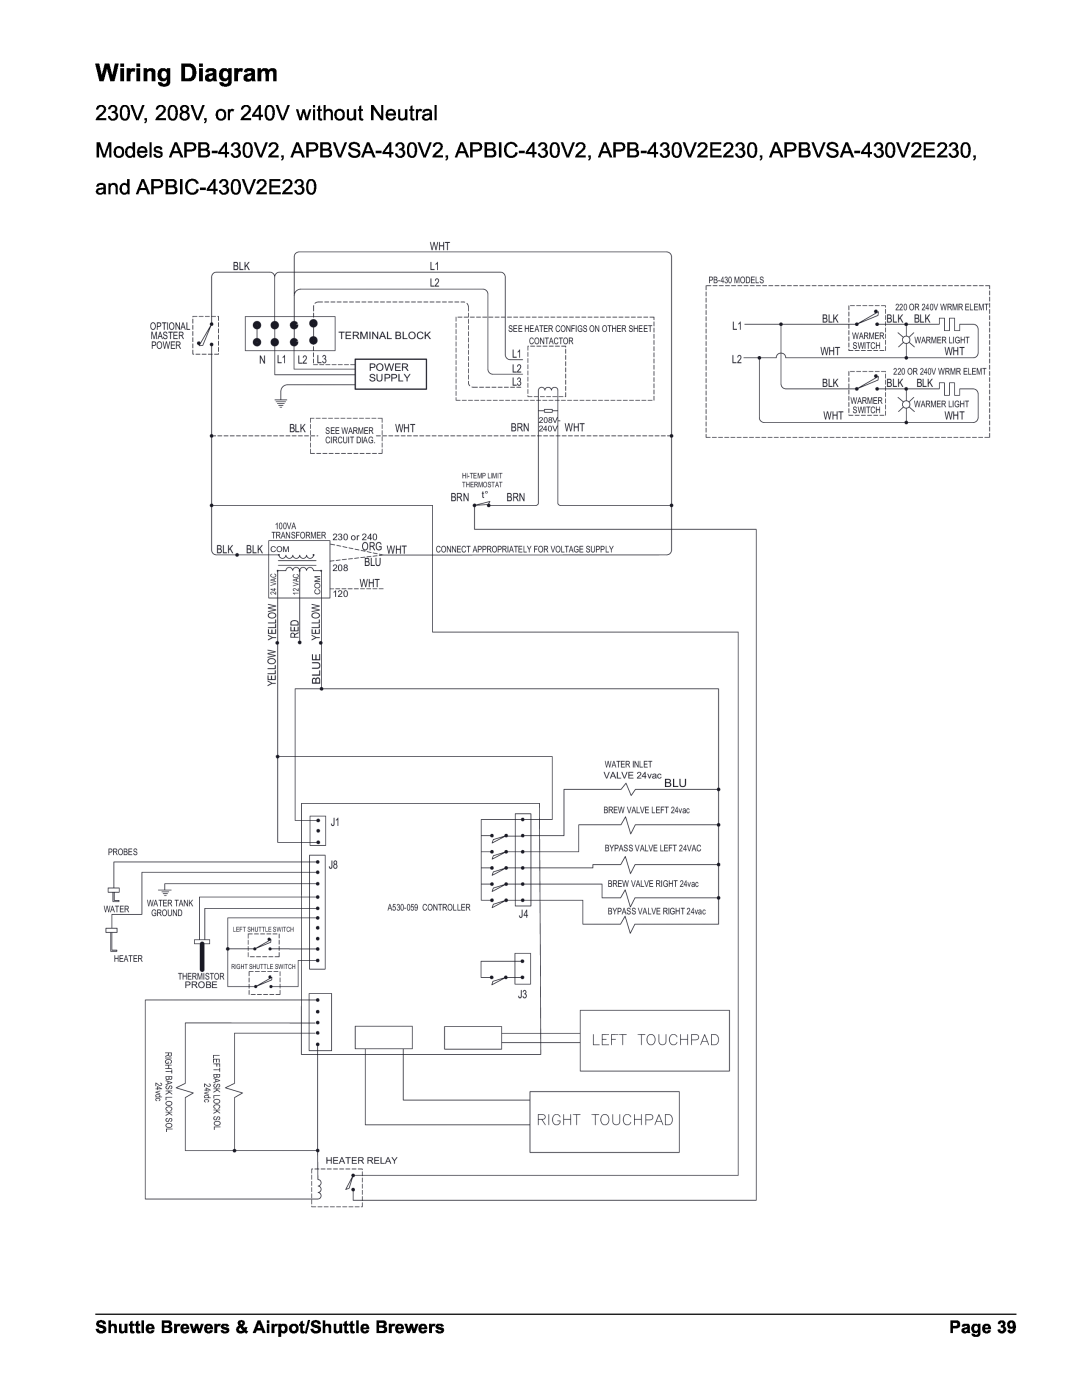 Grindmaster APBVSA-430V2 230V, 208V, or 240V without Neutral, and APBIC-430V2E230, Wiring Diagram, Page, 4ġ4/5#0!$, 1 / 